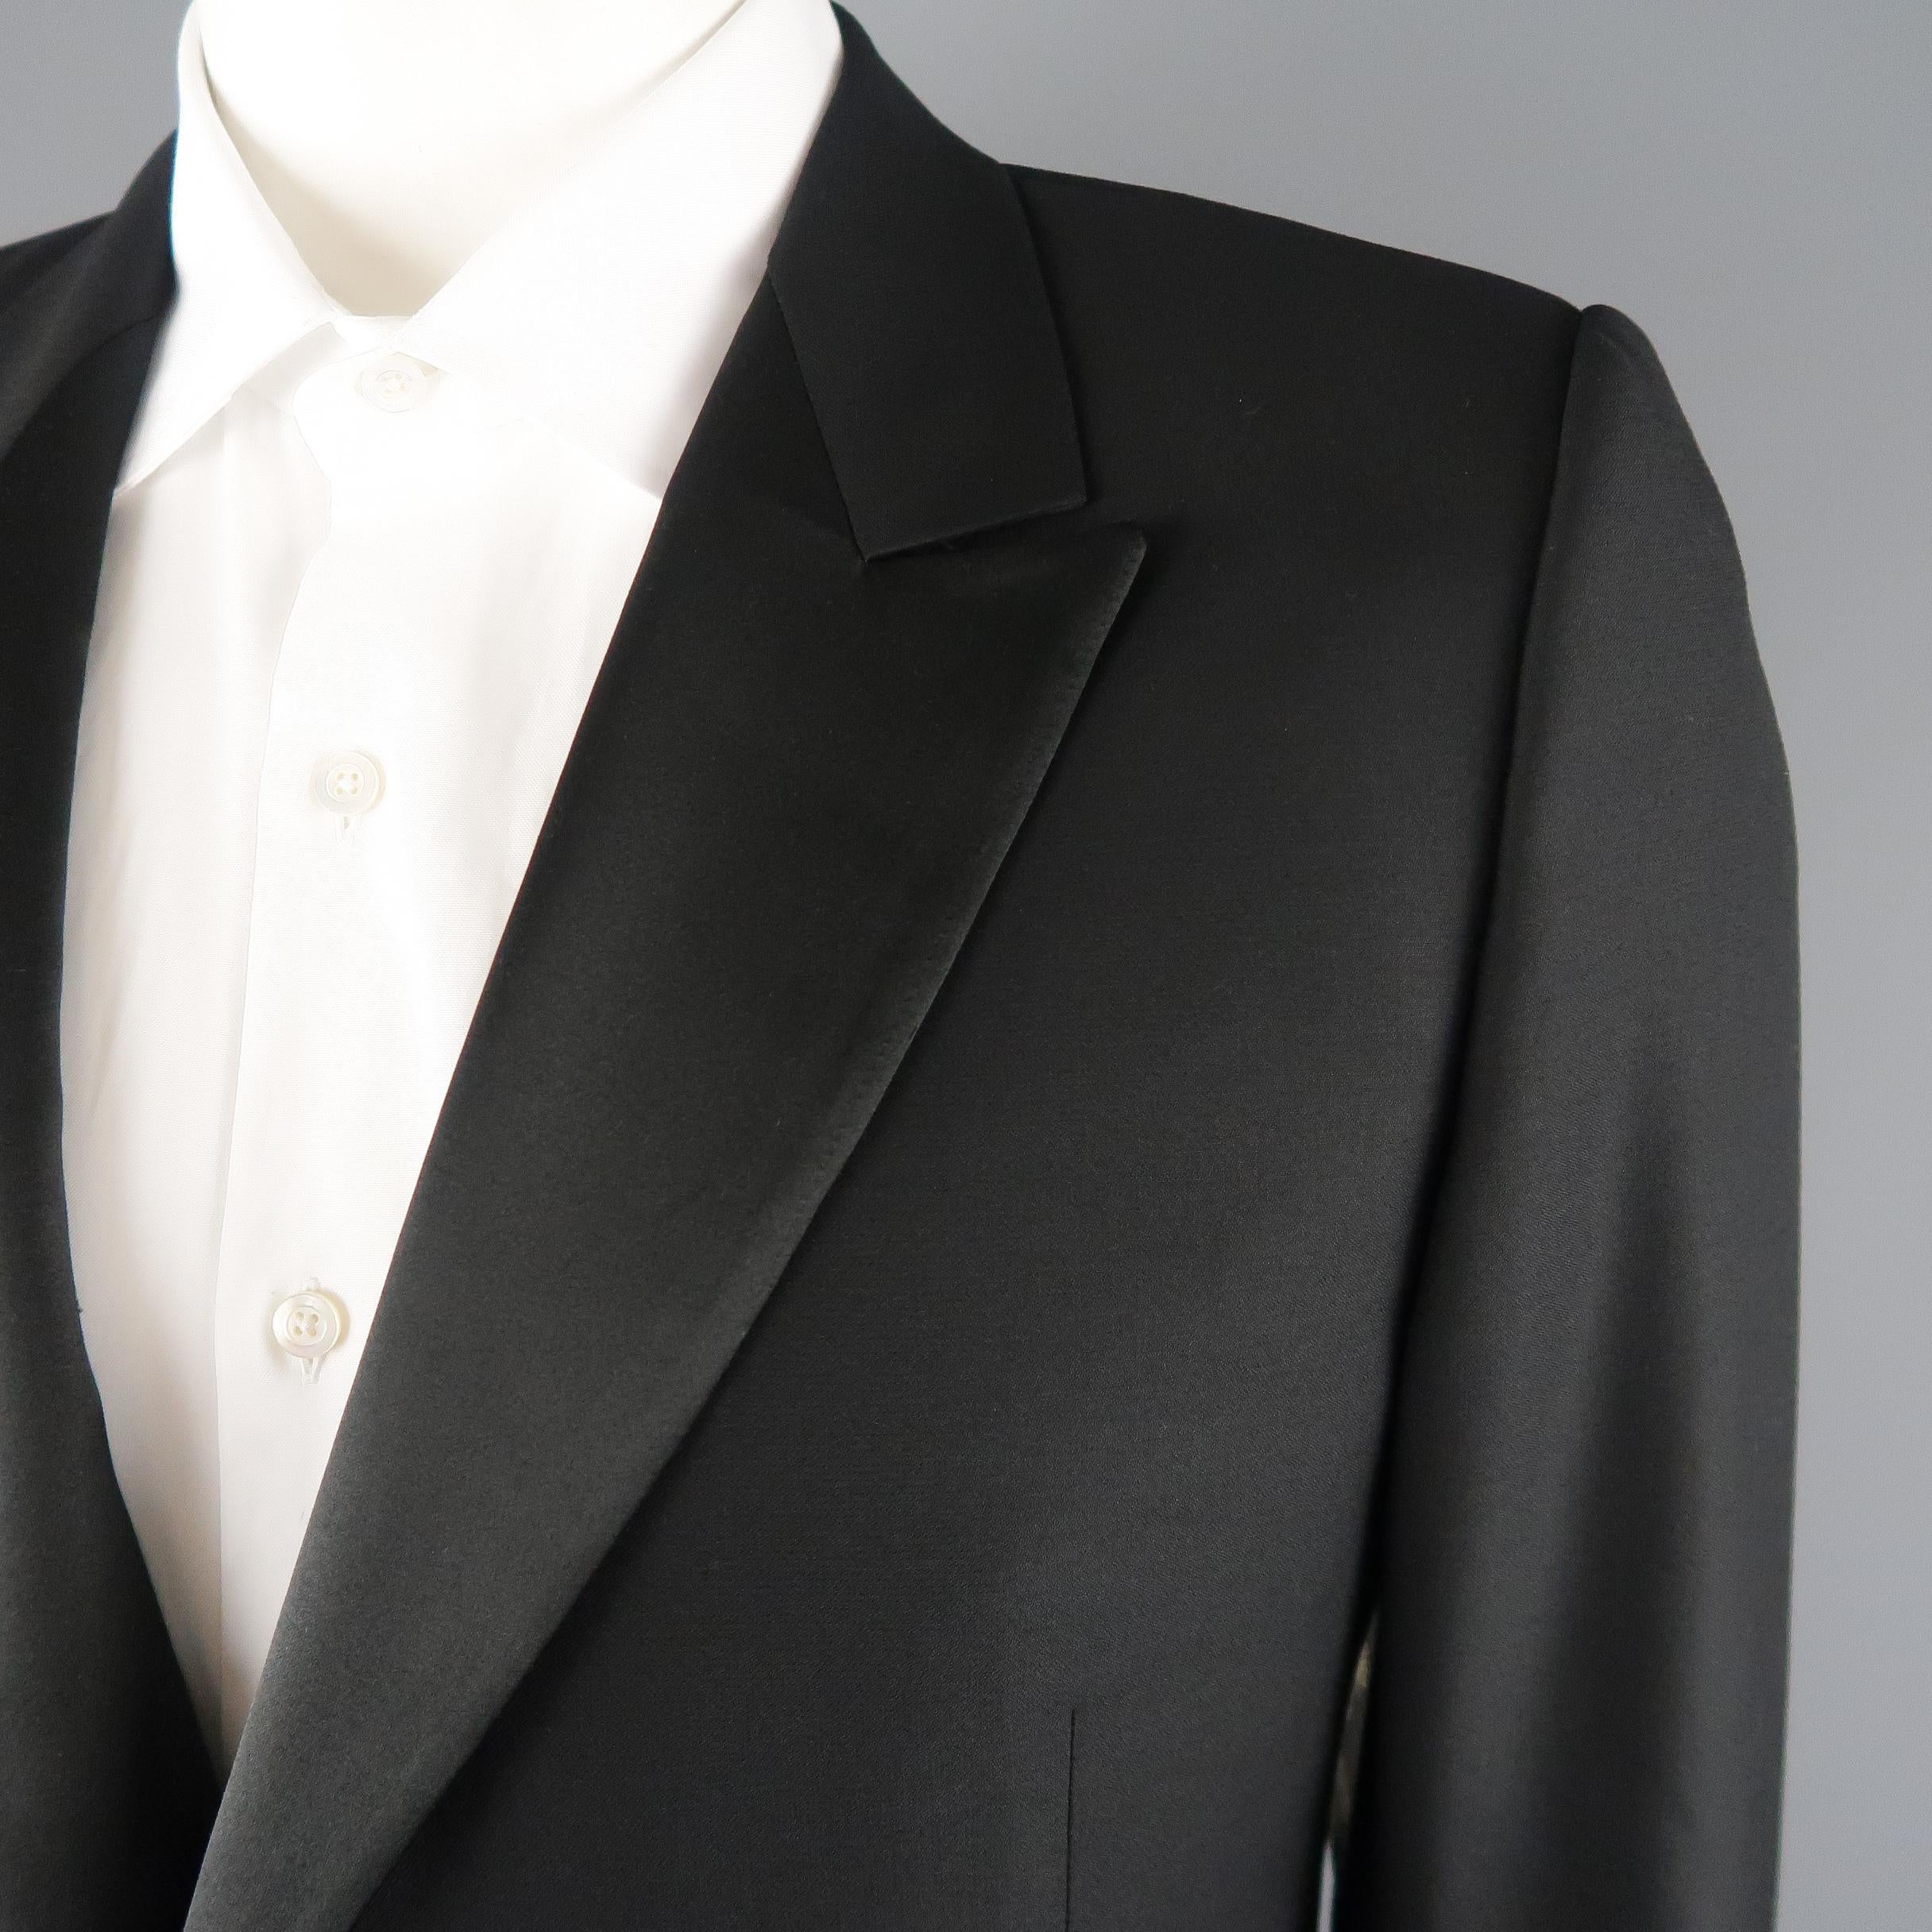 black suit with satin lapel